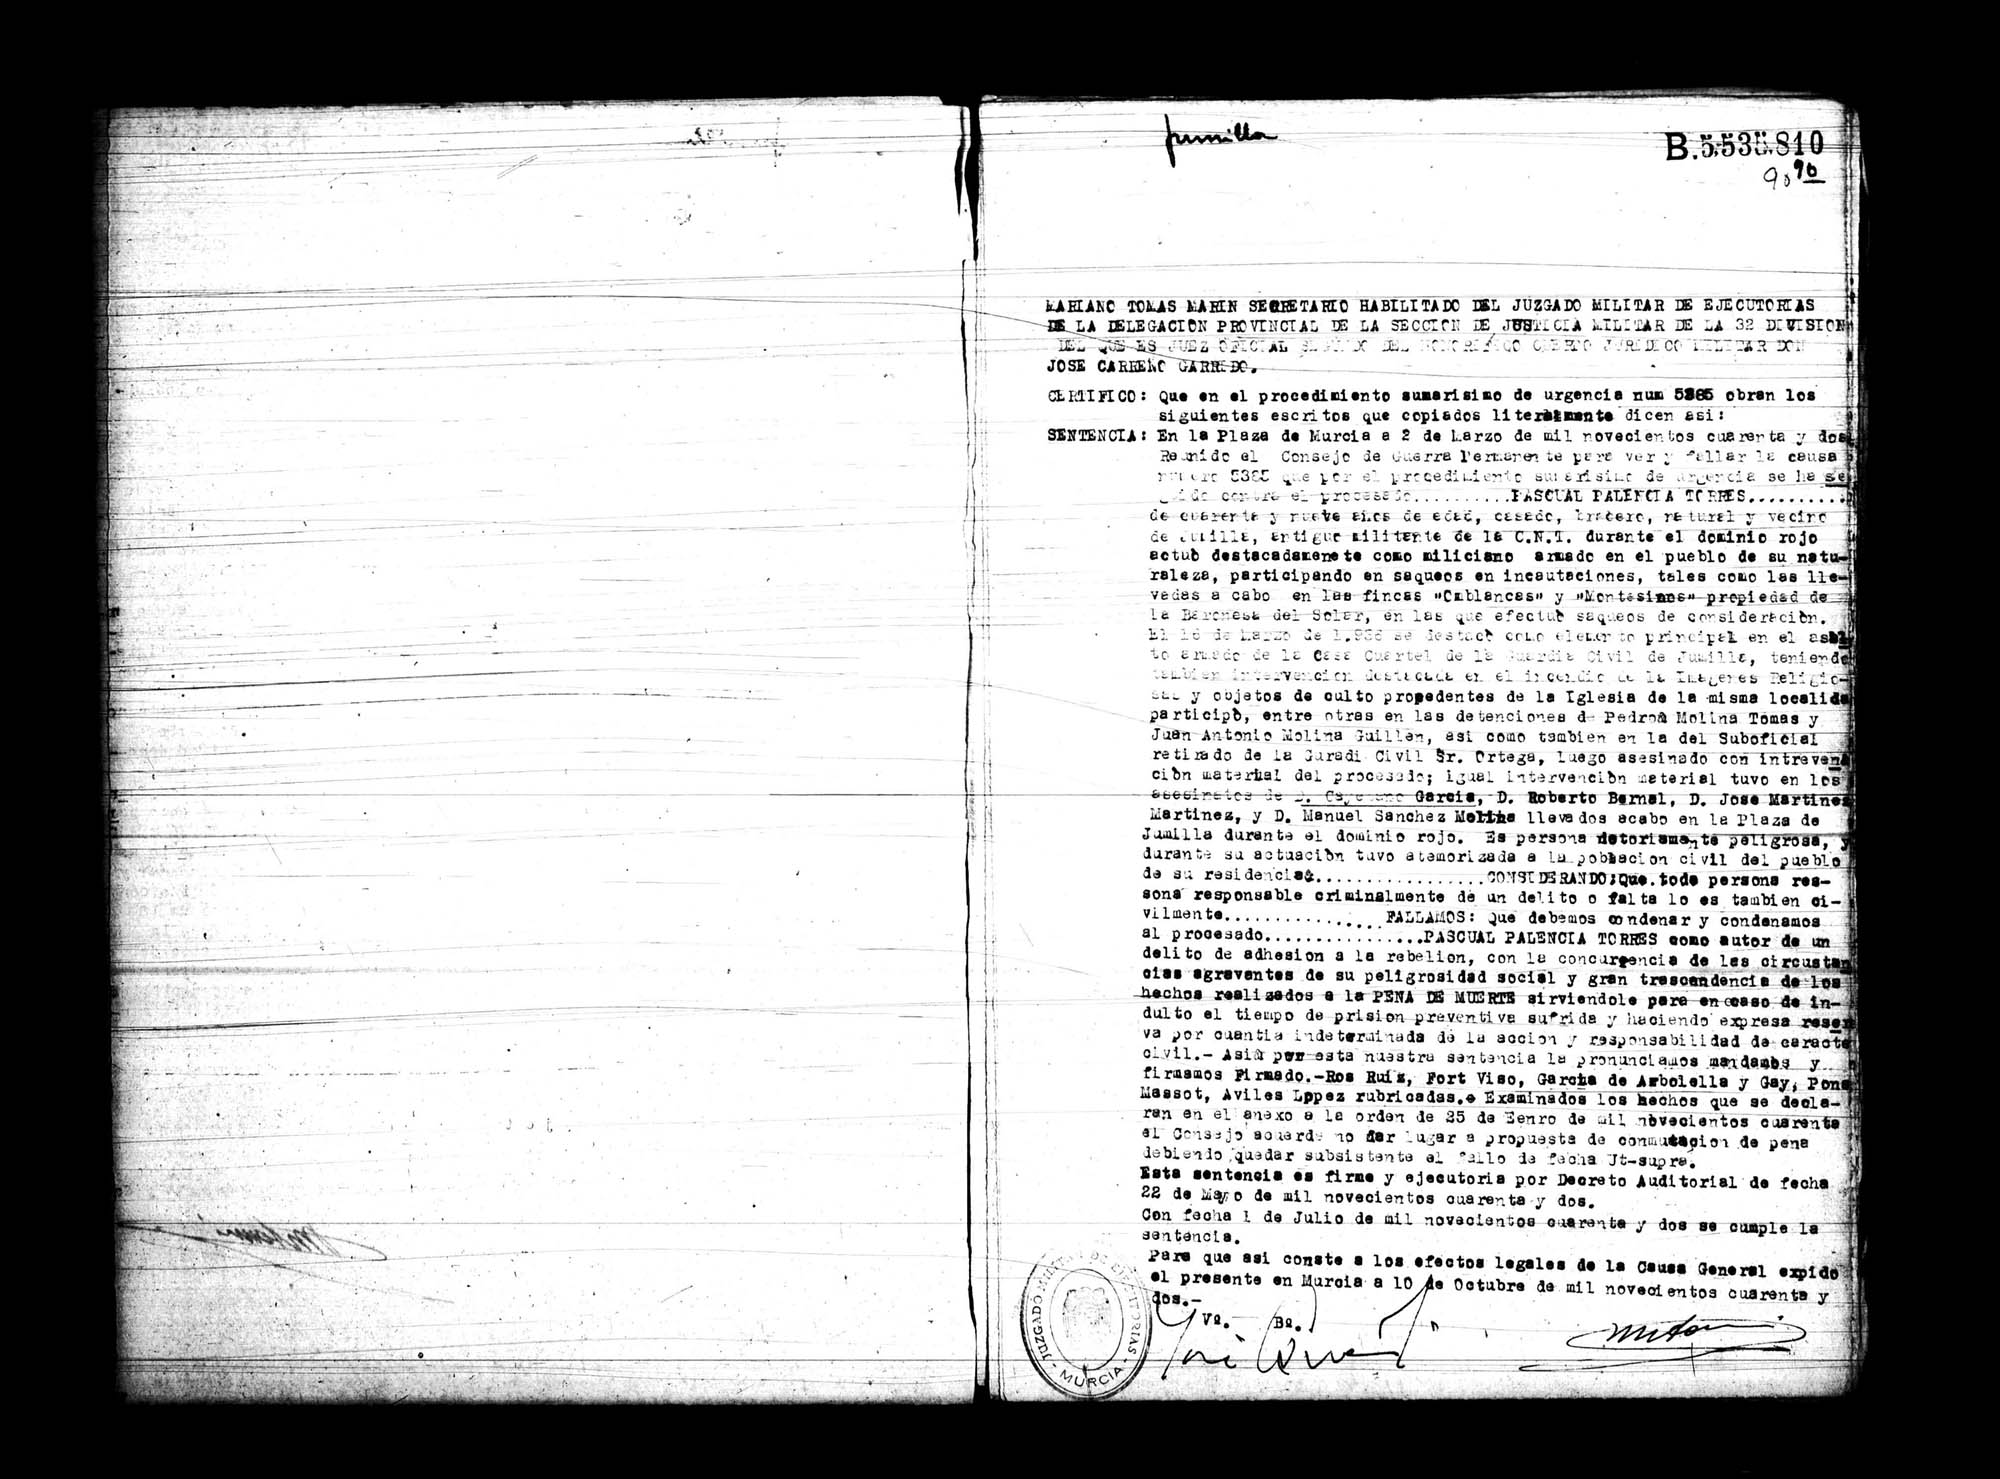 Certificado de la sentencia pronunciada contra Pascual Palencia Torres, causa 5385, el 2 de marzo de 1942.